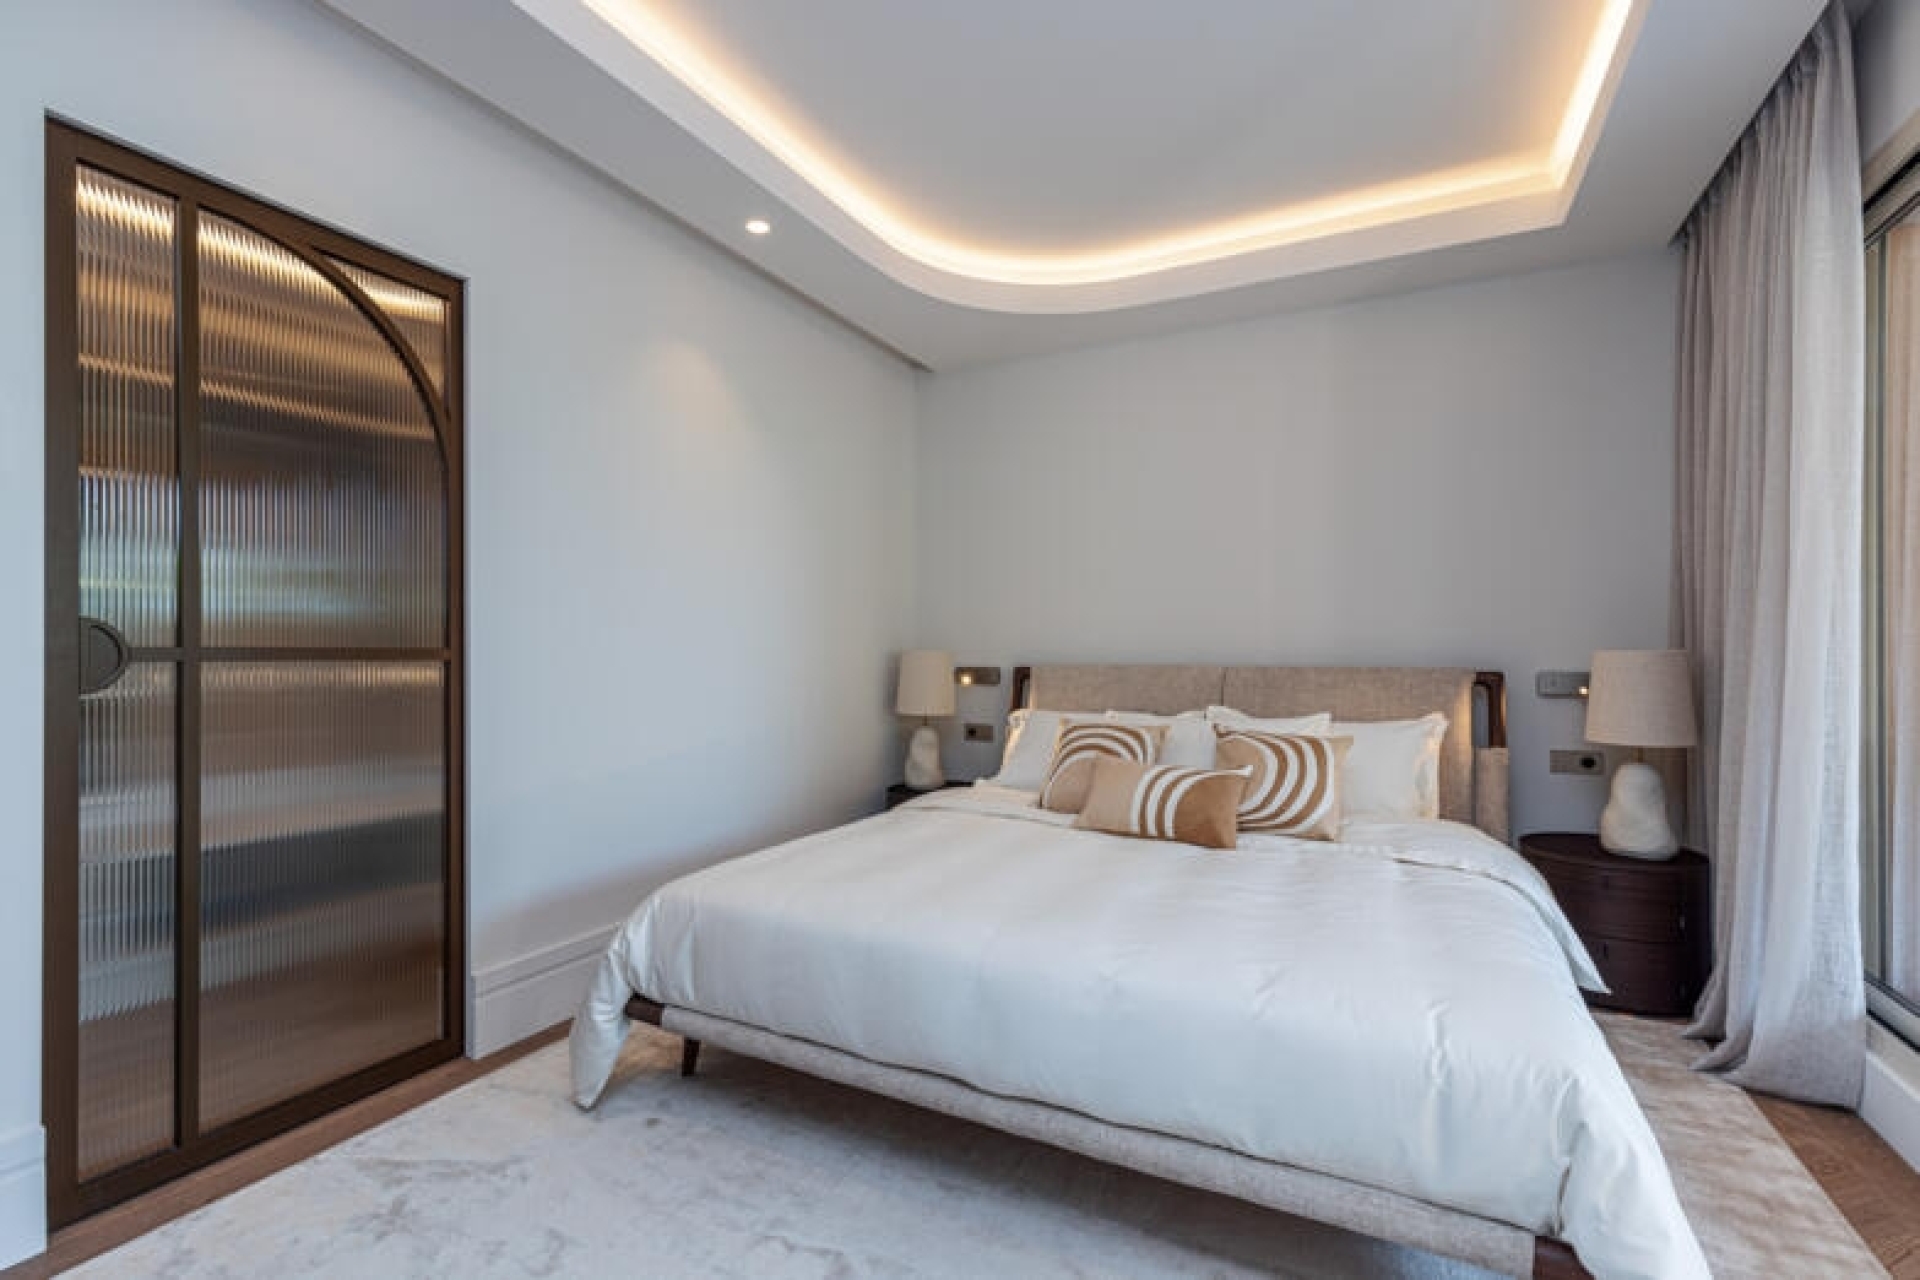 Dotta Appartement de 4 pieces a vendre - GRAND LARGE - Fontvieille - Monaco - img14